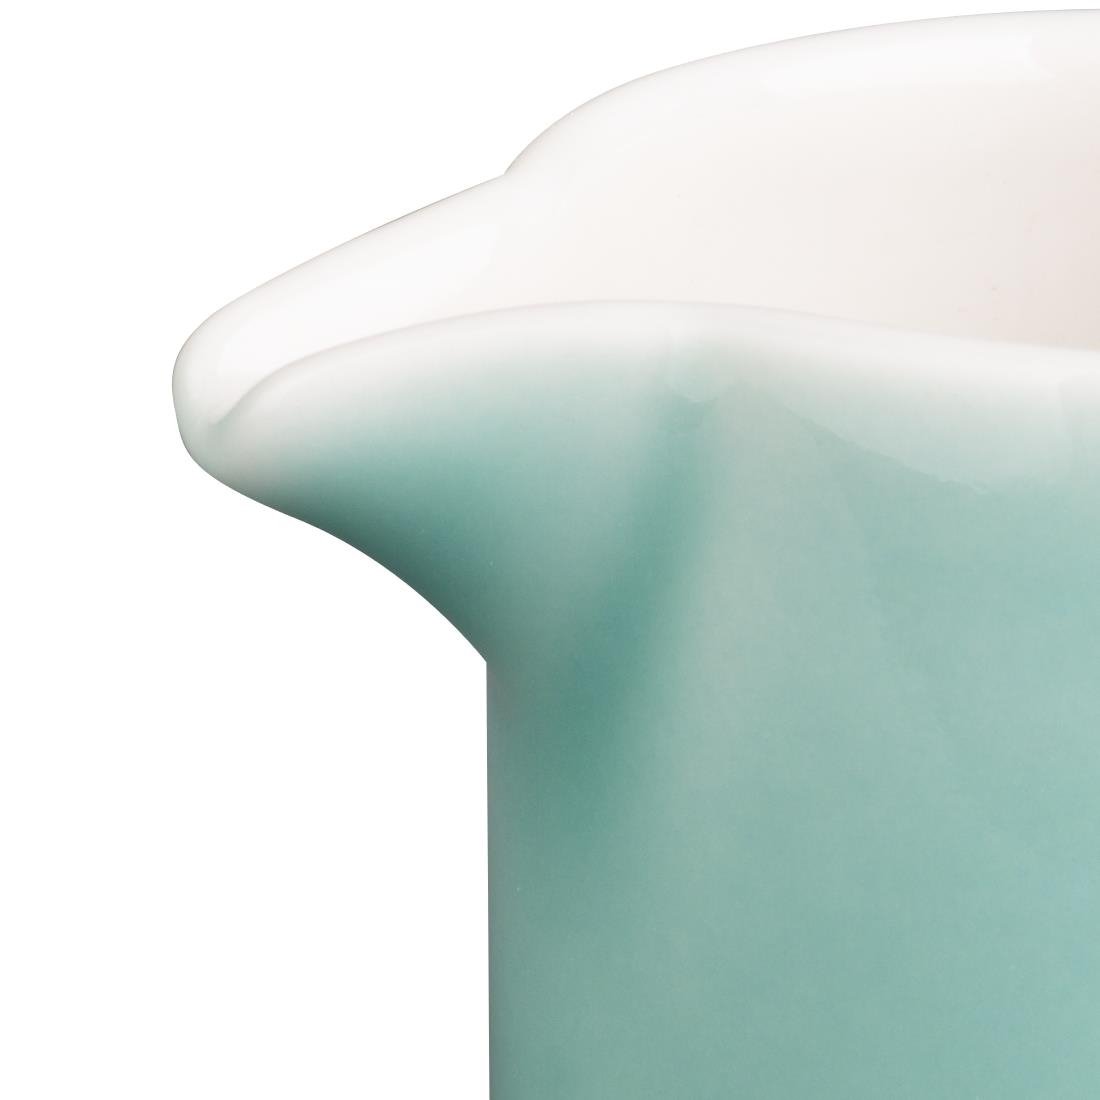 Pots à lait Olympia Fondant verts 85,5ml (lot de 12)